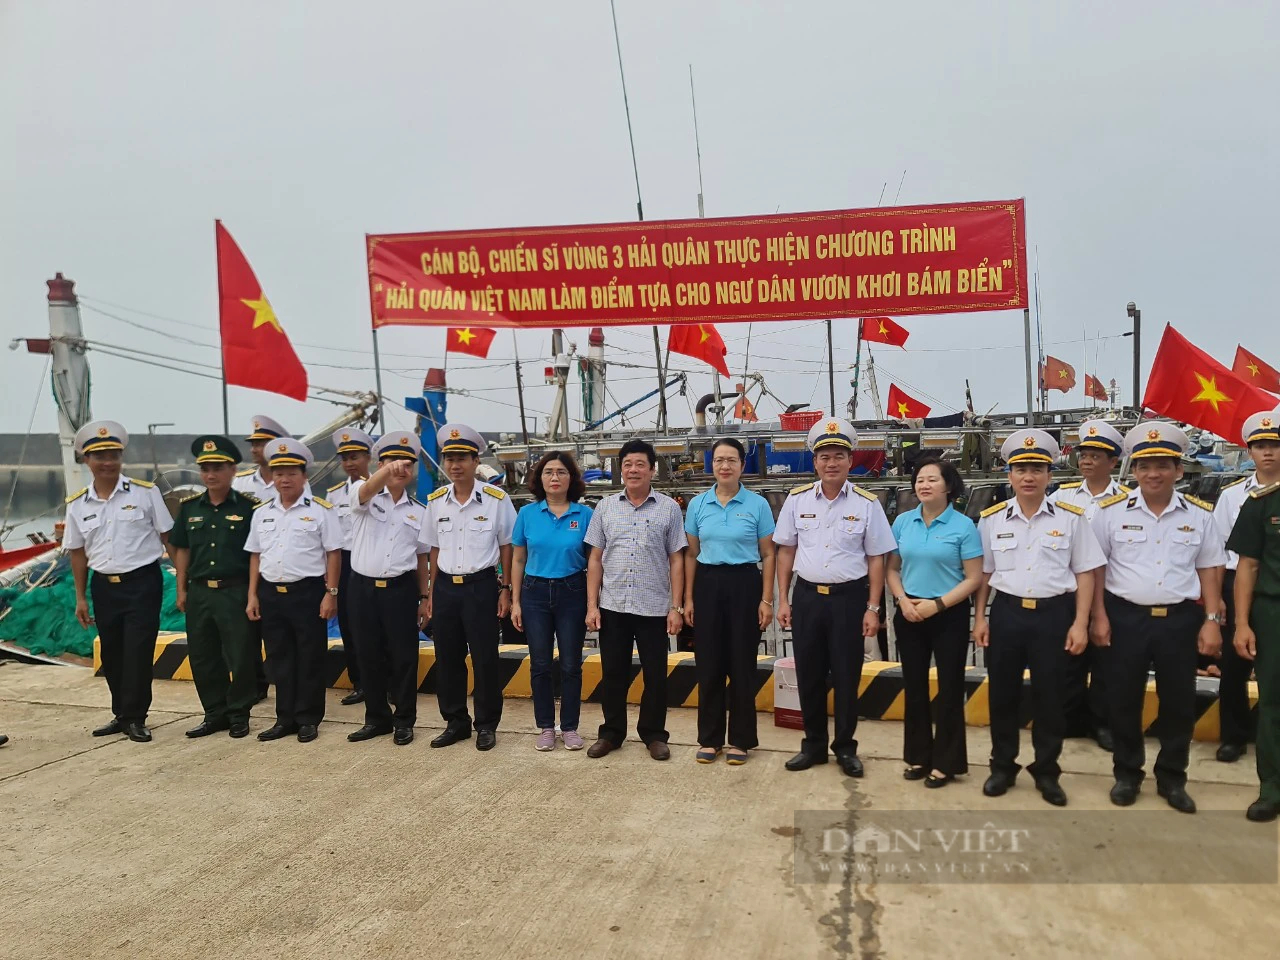 Quảng Trị: Agribank tiếp sức cùng quân dân huyện đảo Cồn Cỏ vươn khơi, bám biển- Ảnh 1.